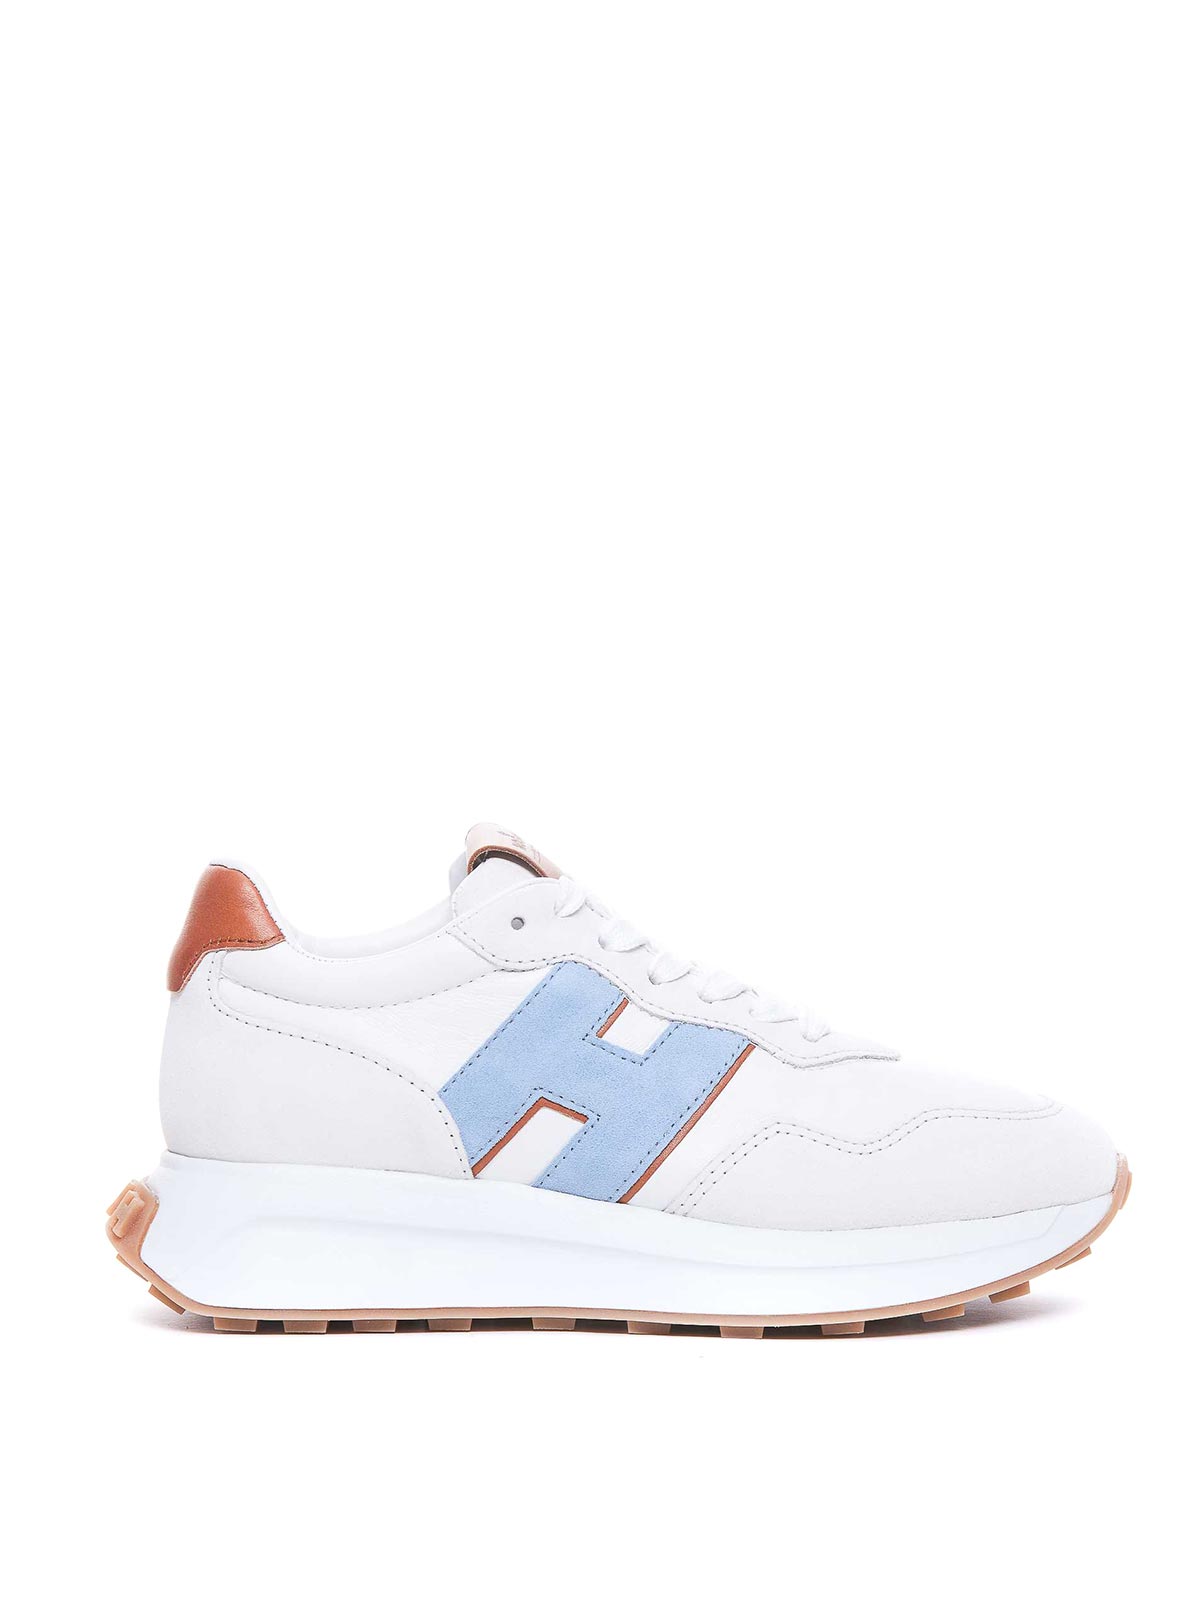 Hogan H641 Sneakers In Blanco